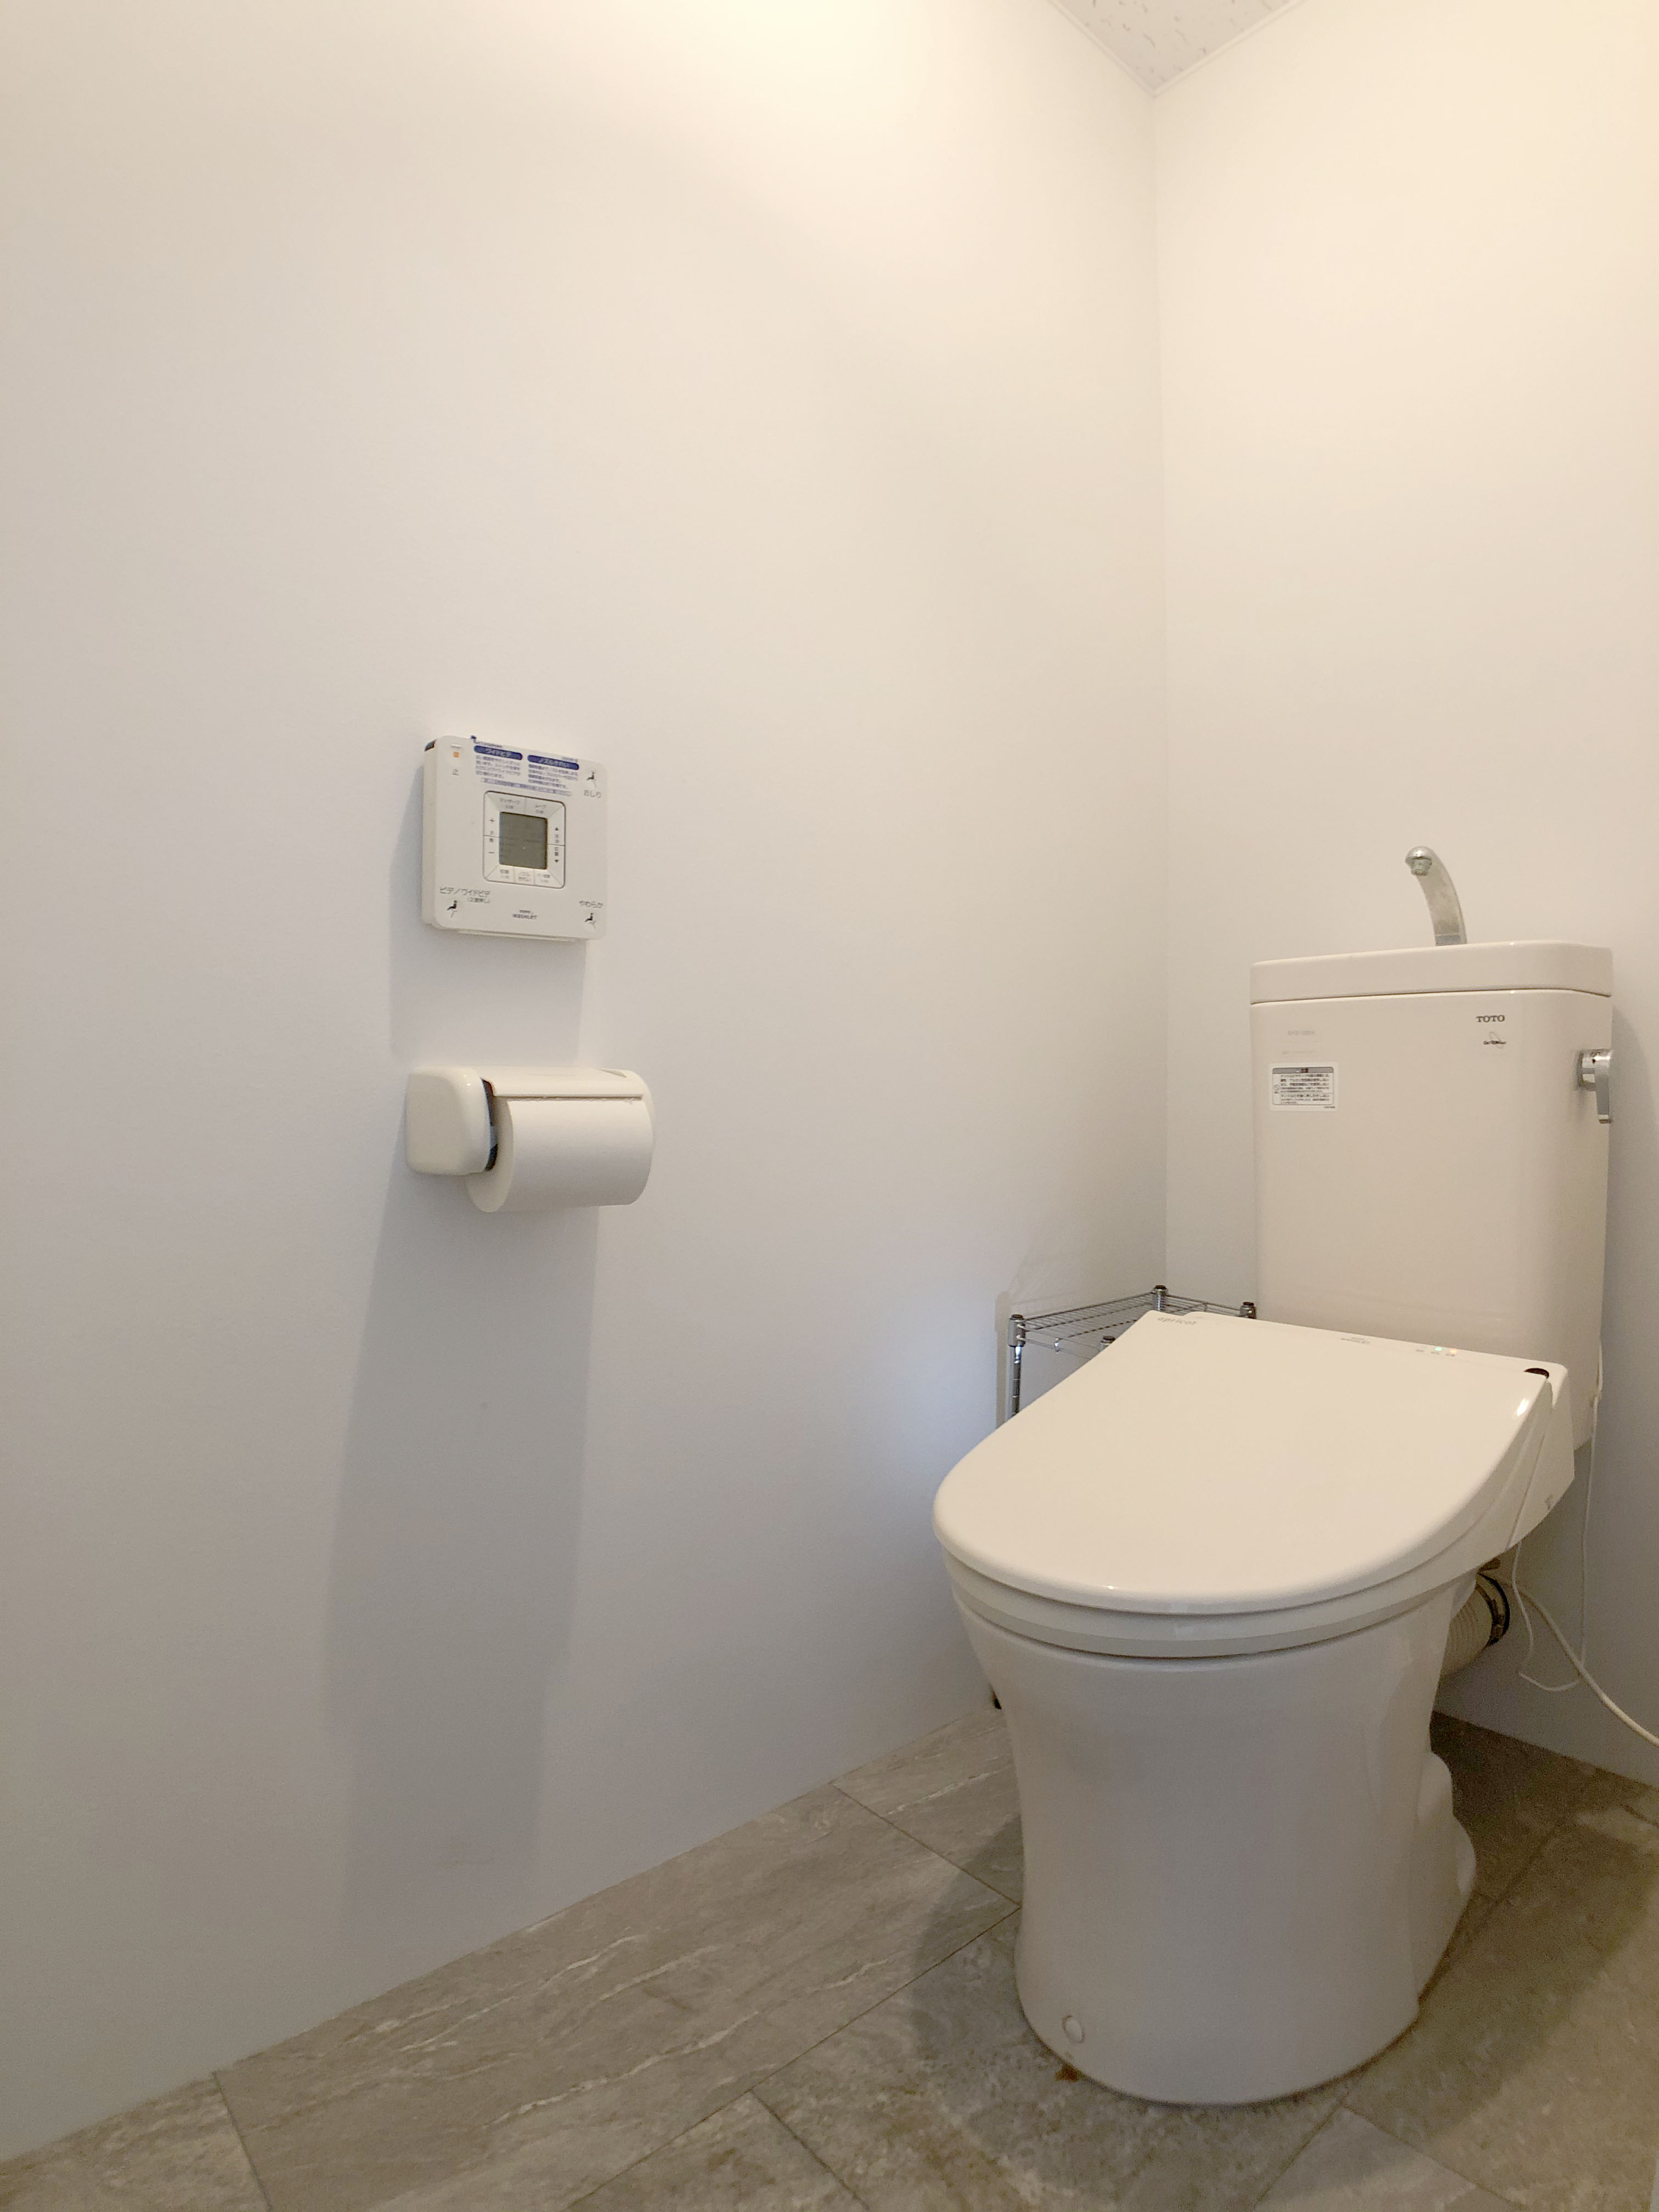 トイレ新設リフォーム アイキャッチ画像